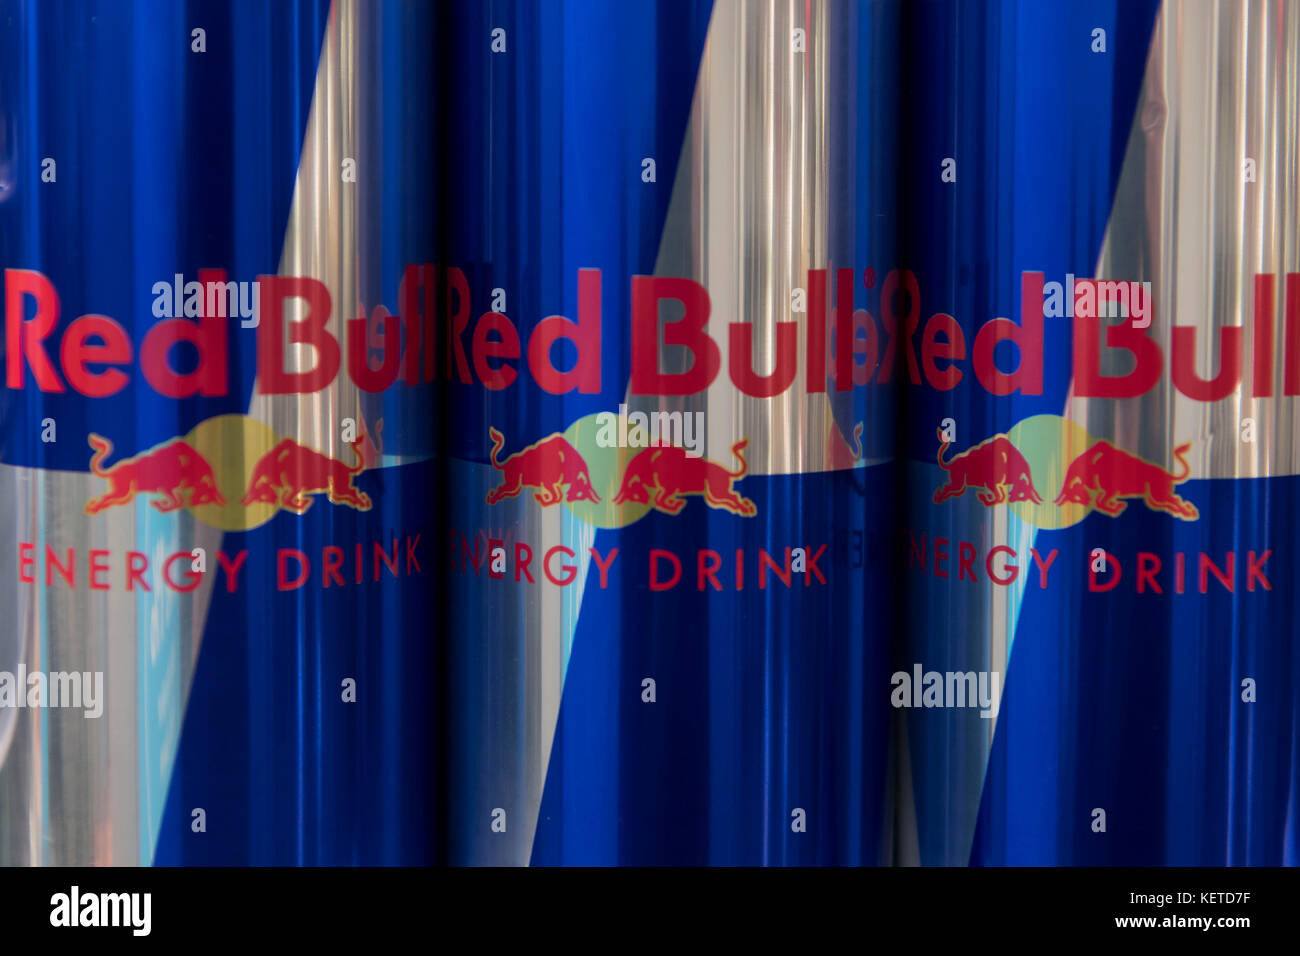 Dosen von der energy drink Red Bull auf Anzeige auf einen Supermarkt Regal. Stockfoto